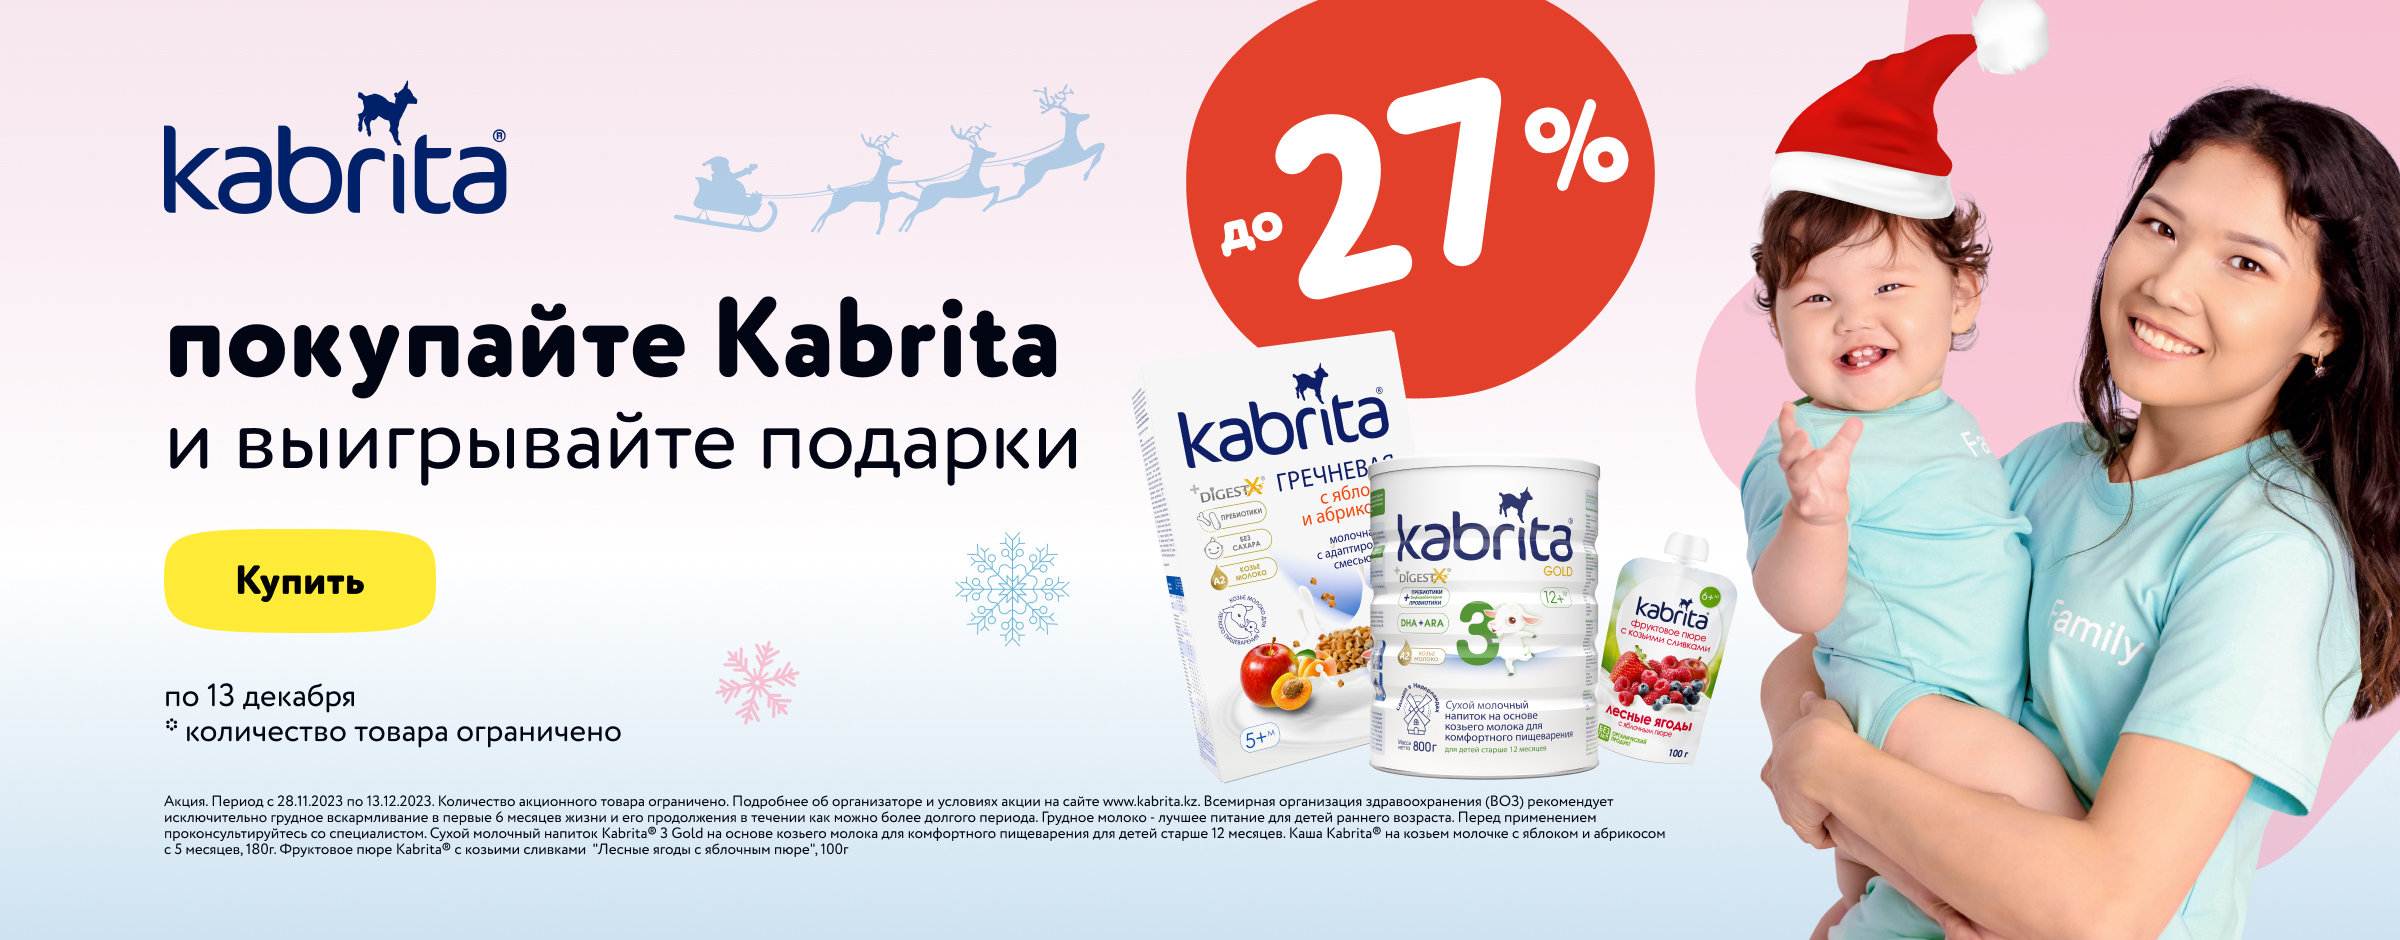 Покупайте любые продукты Kabrita со скидкой до 27%_карусель на главной